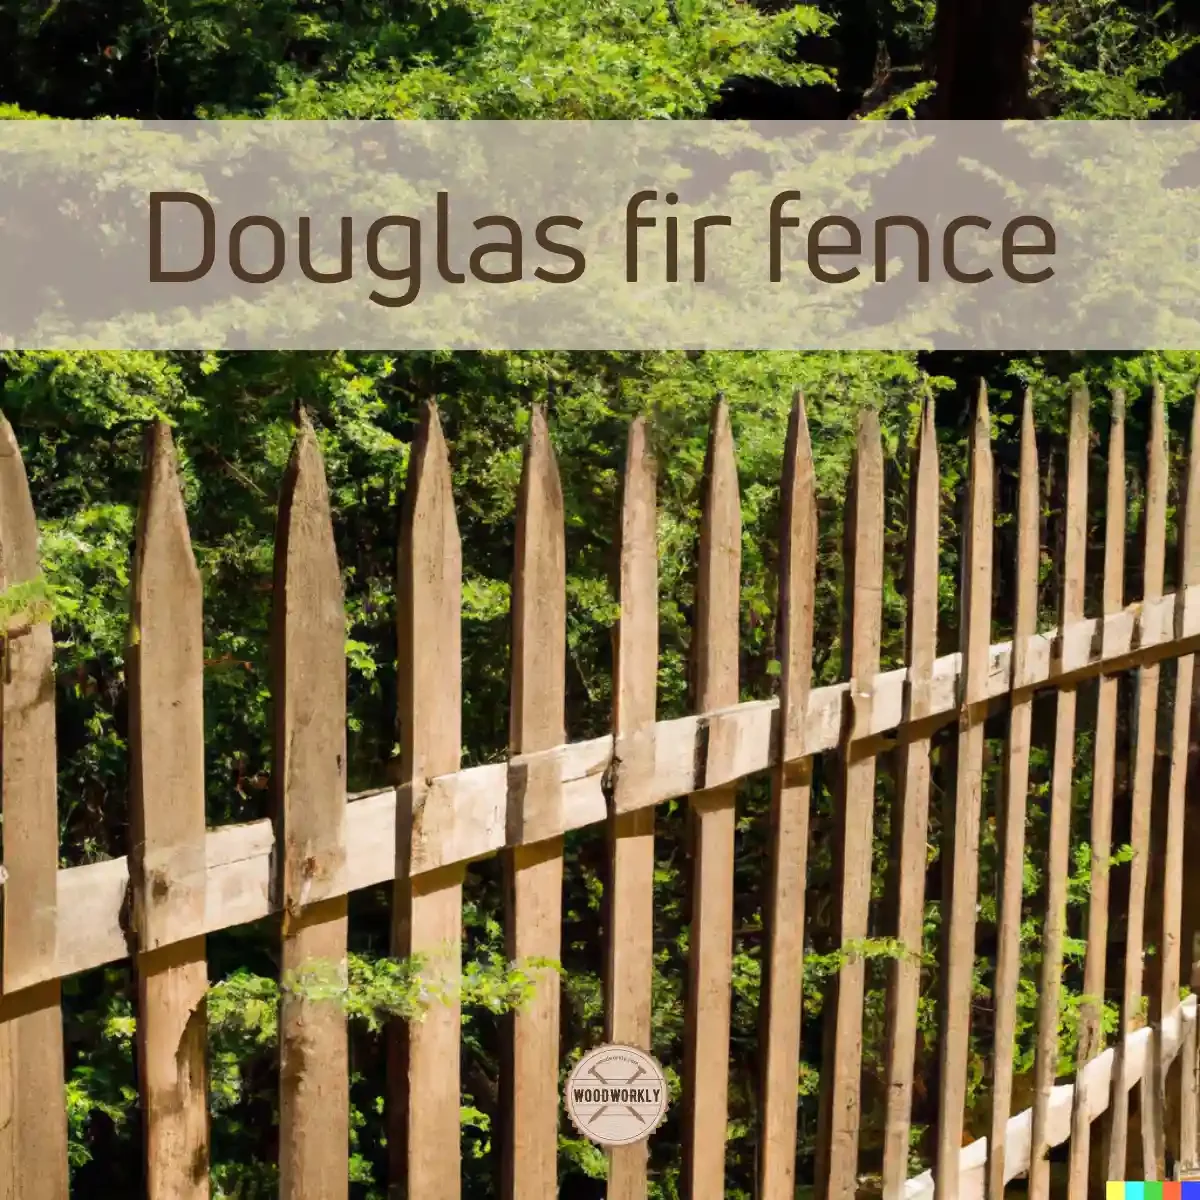 Douglas fir fence